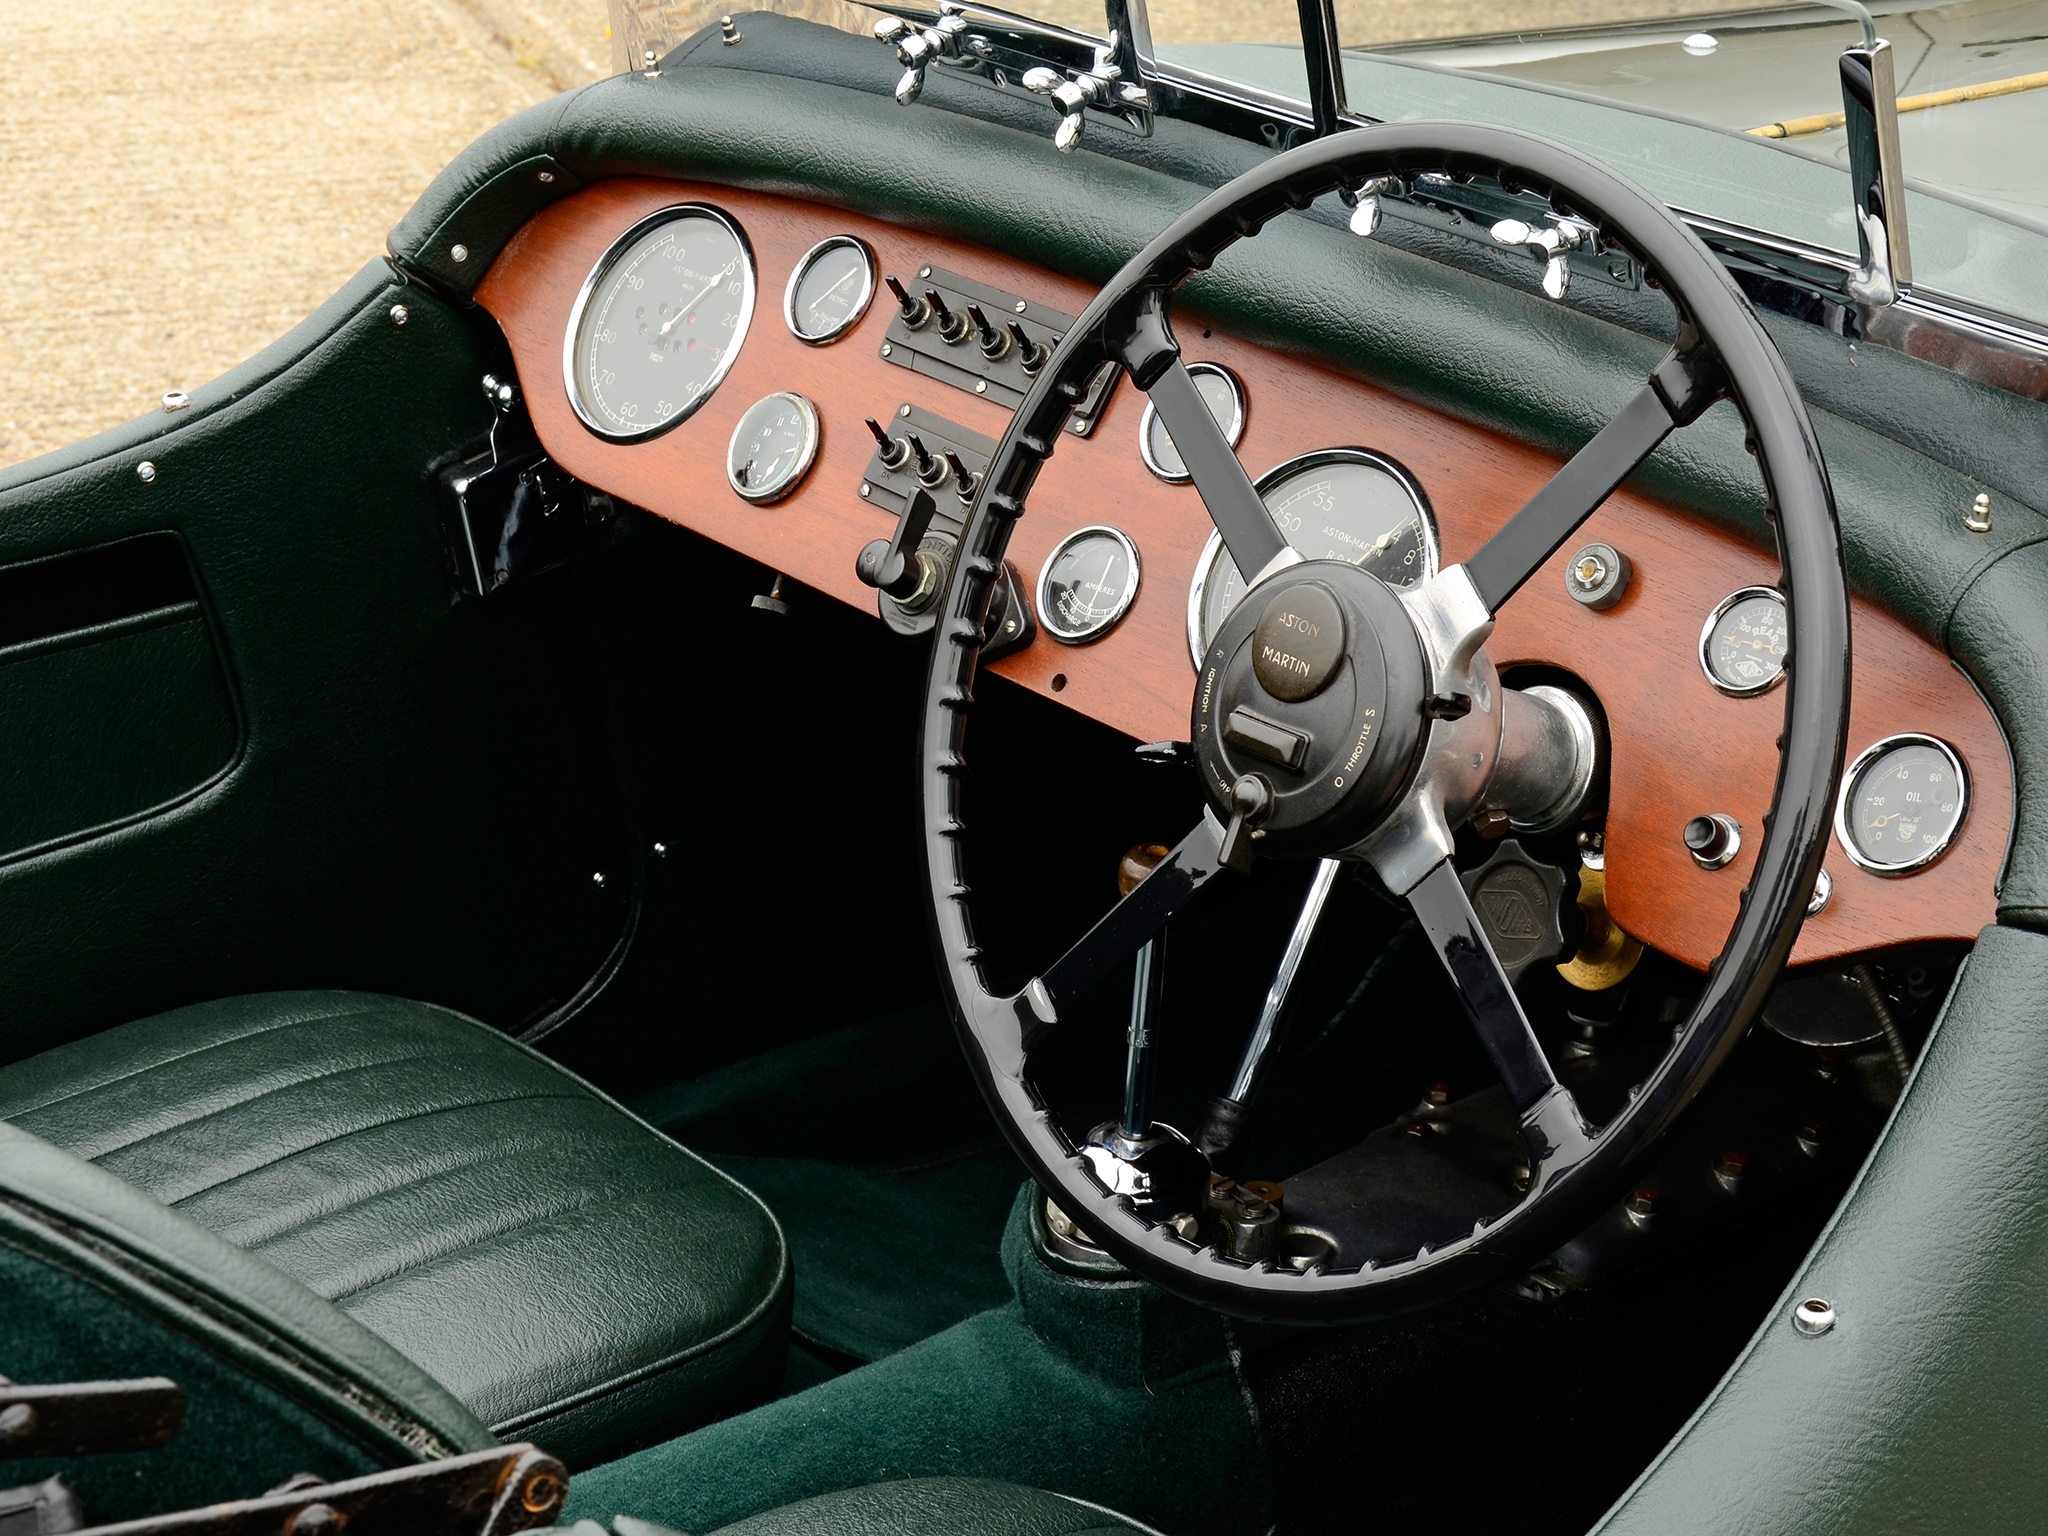 salon, rudder, interior, aston martin, cars, green, retro, steering wheel, 1937 Full HD